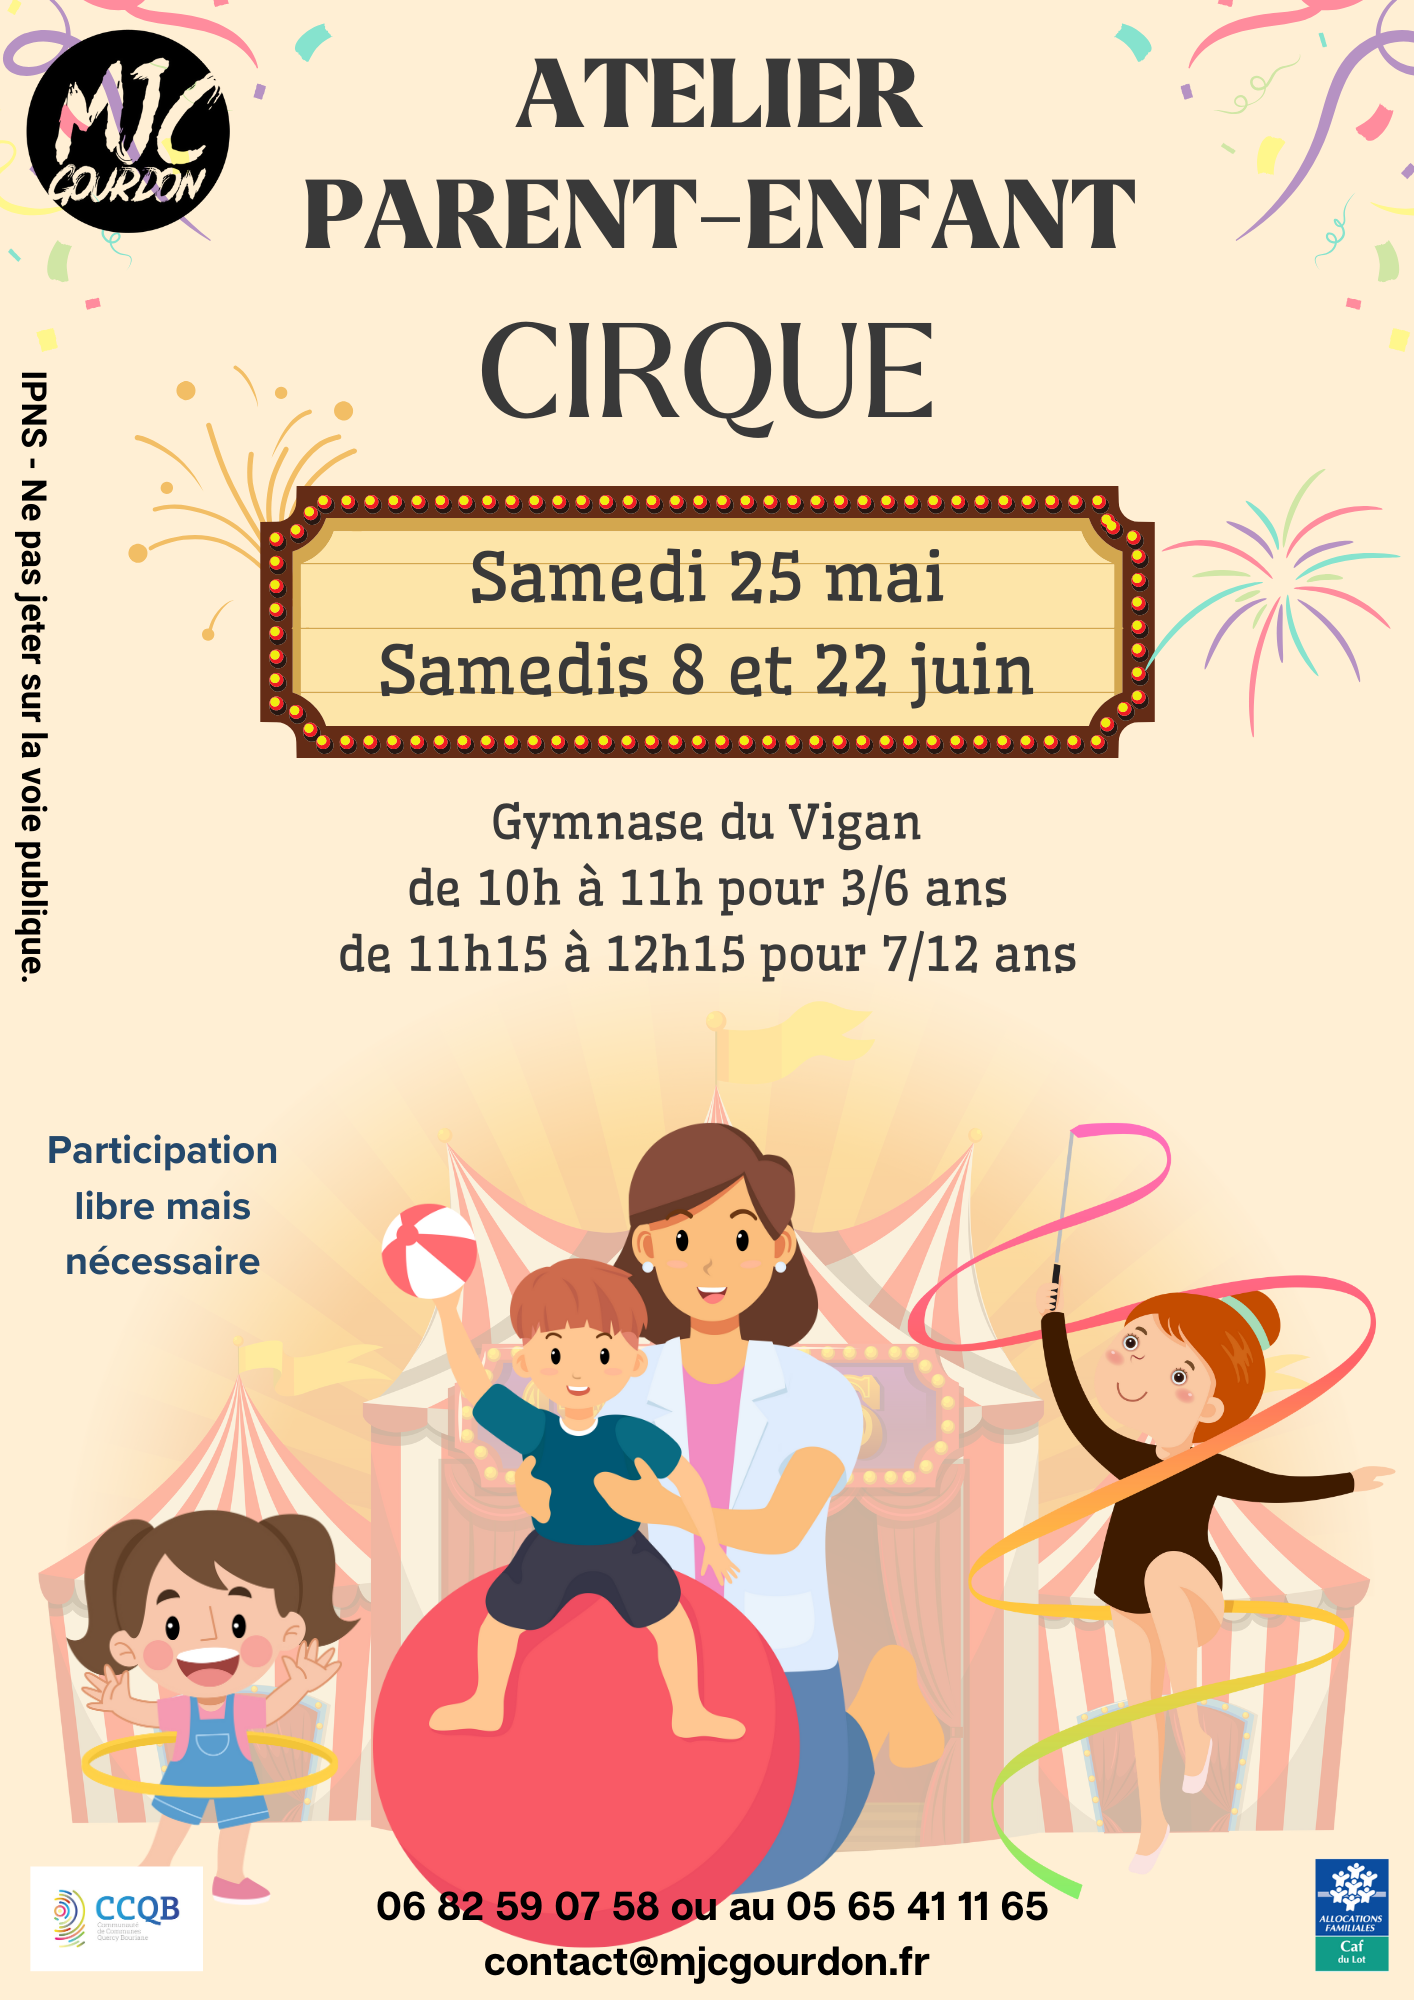 Ateliers Parents-Enfants : Cirque (1/1)